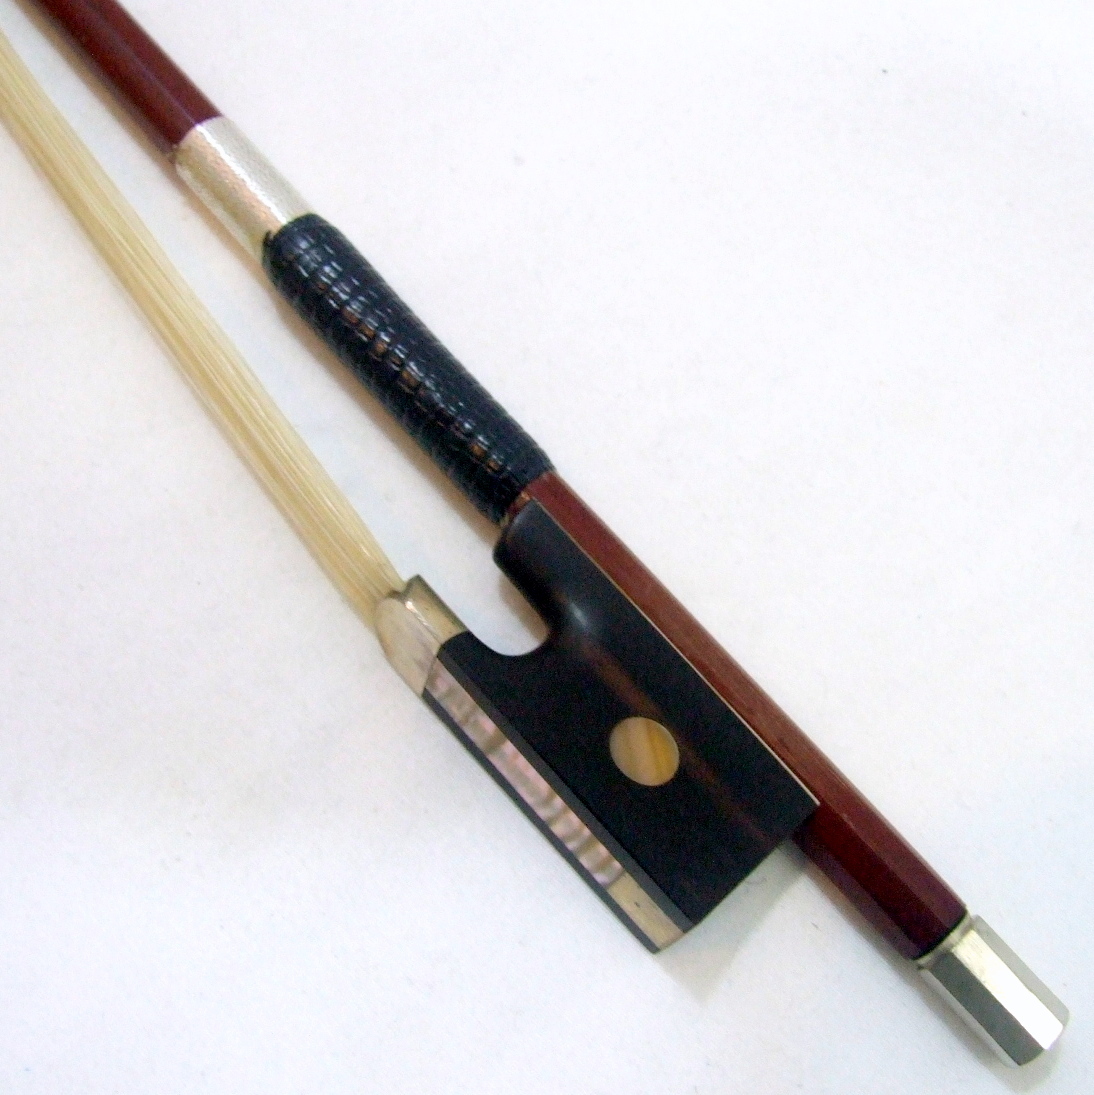  произведено техническое обслуживание Suzuki скрипка No520 4/4 1983 год feru наан b-ko смычок domi наан to кейс прекрасный товар комплект бесплатная доставка 